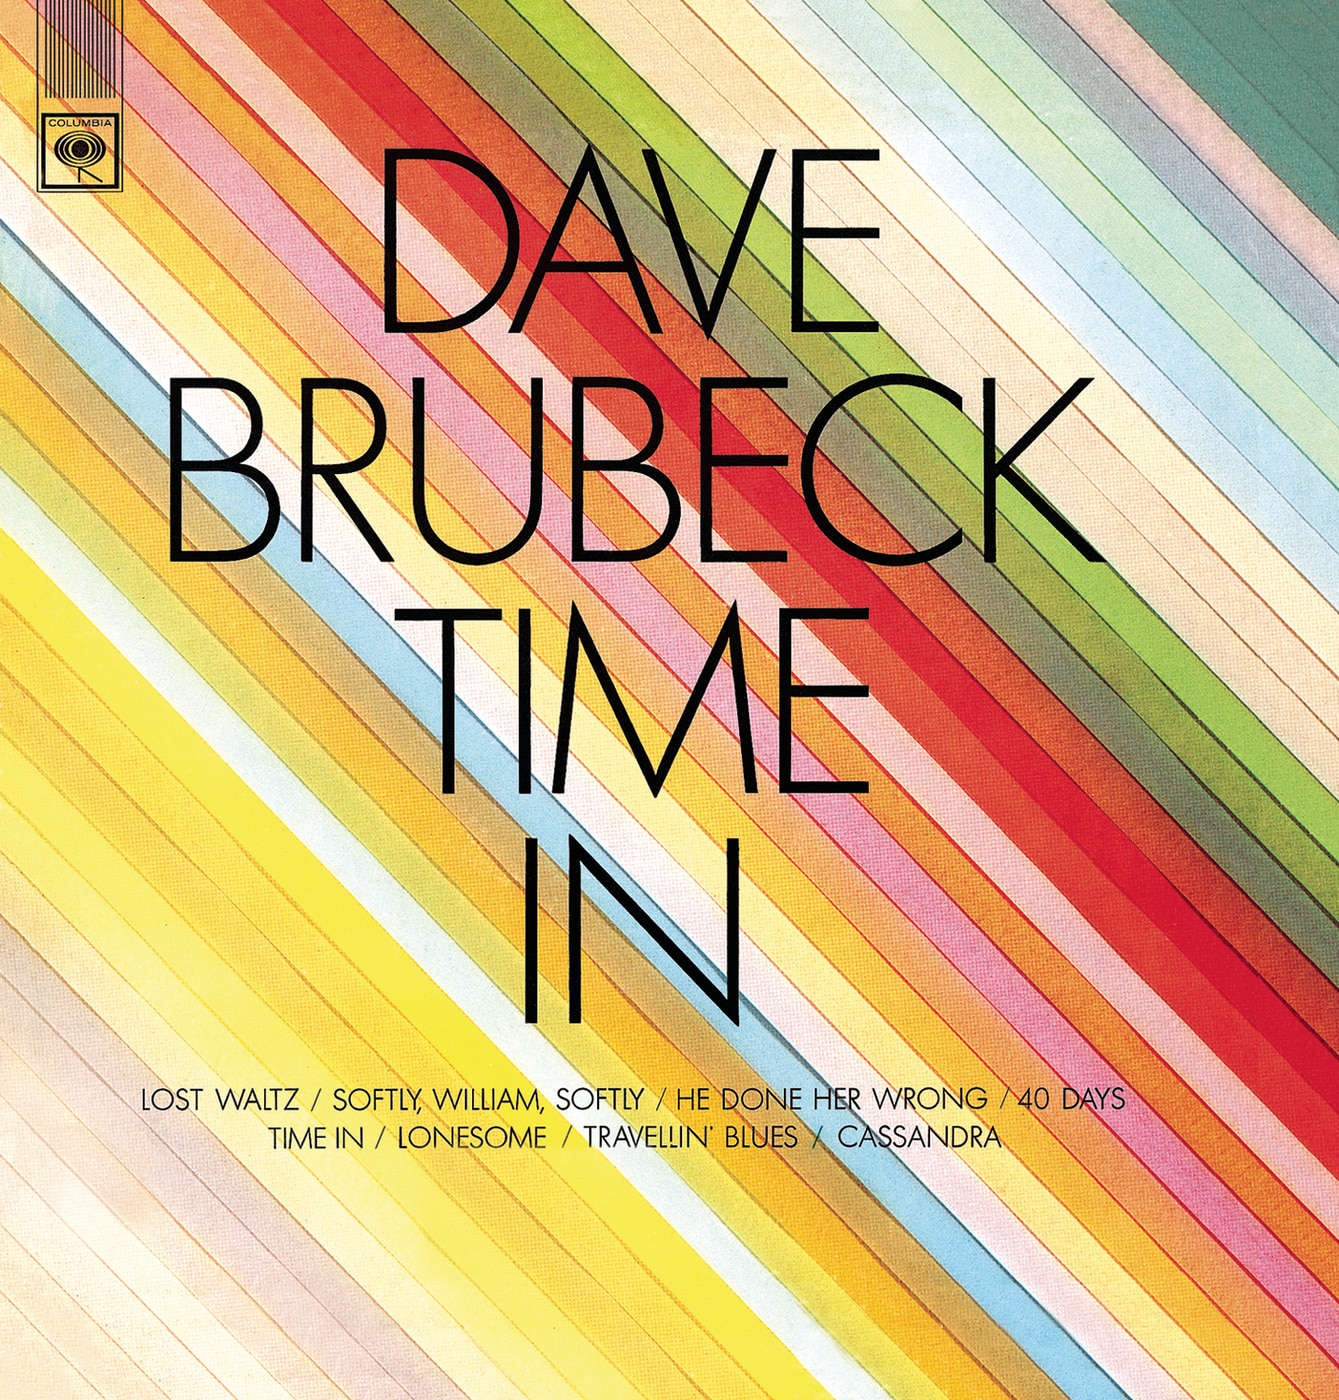 The Dave Brubeck Quartet-Eleven Four